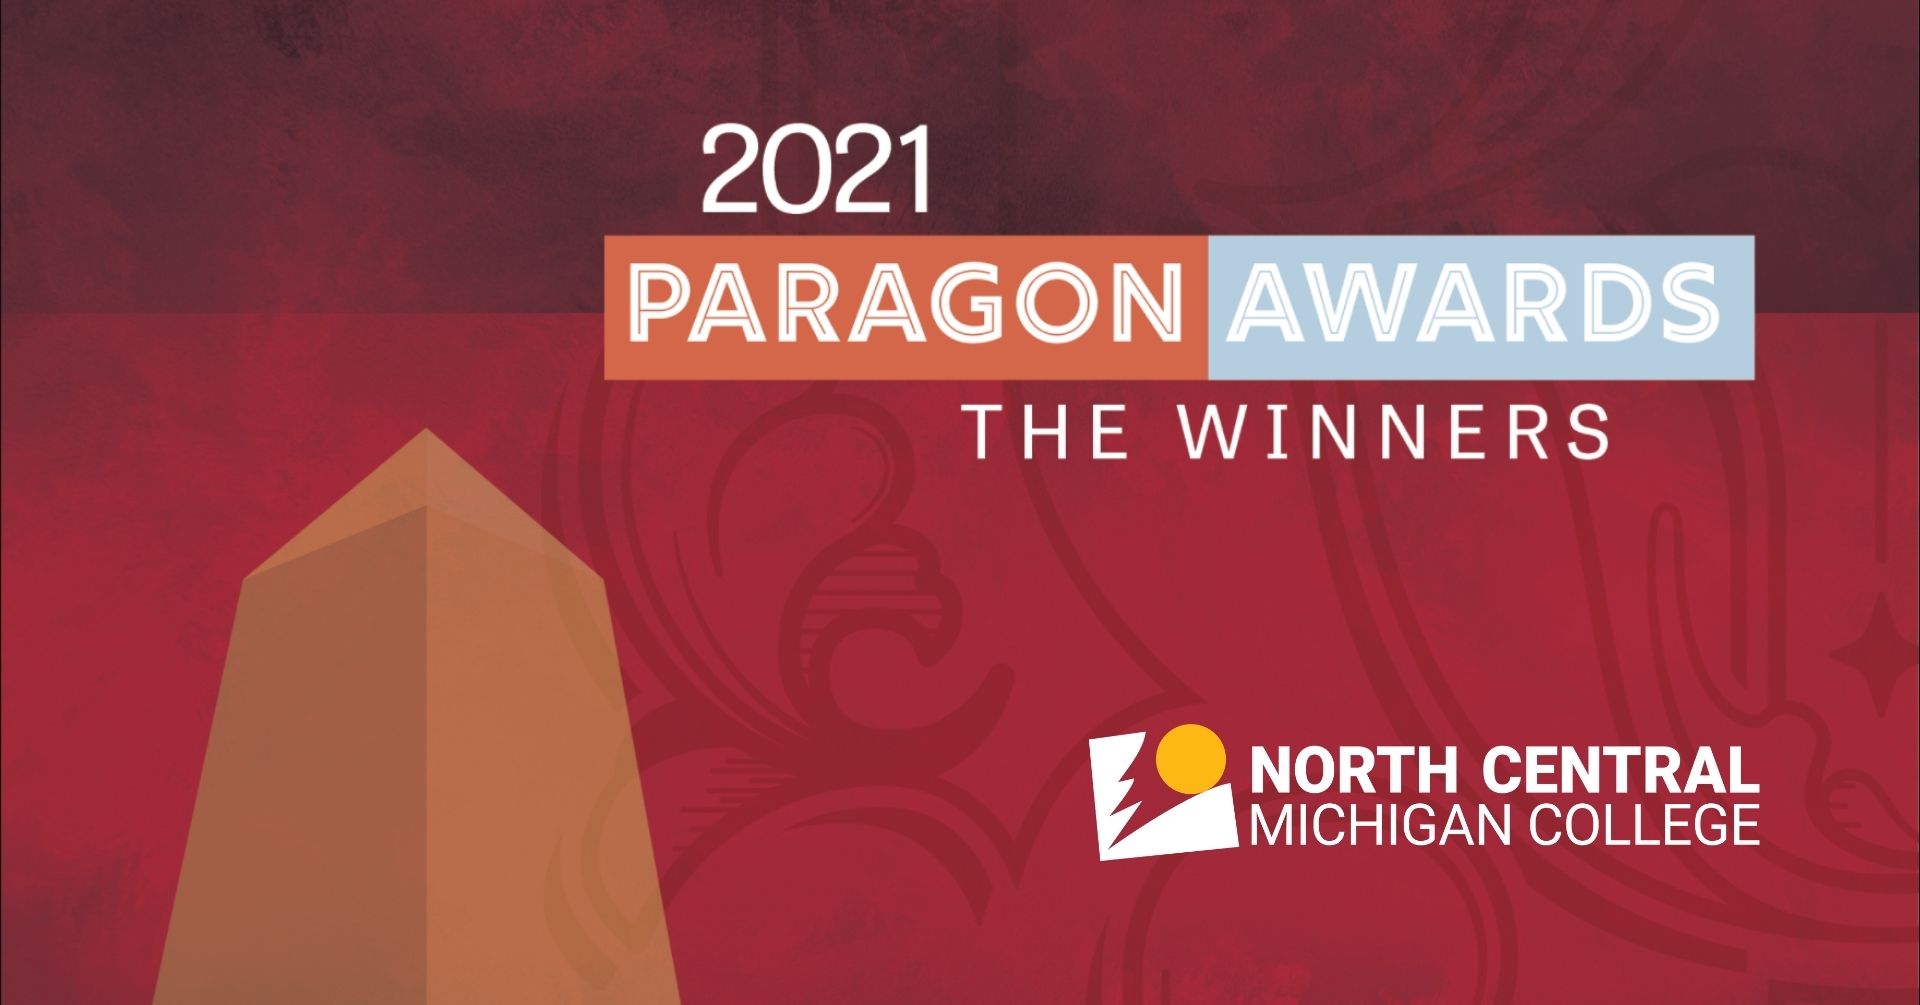 2021 Paragon Awards